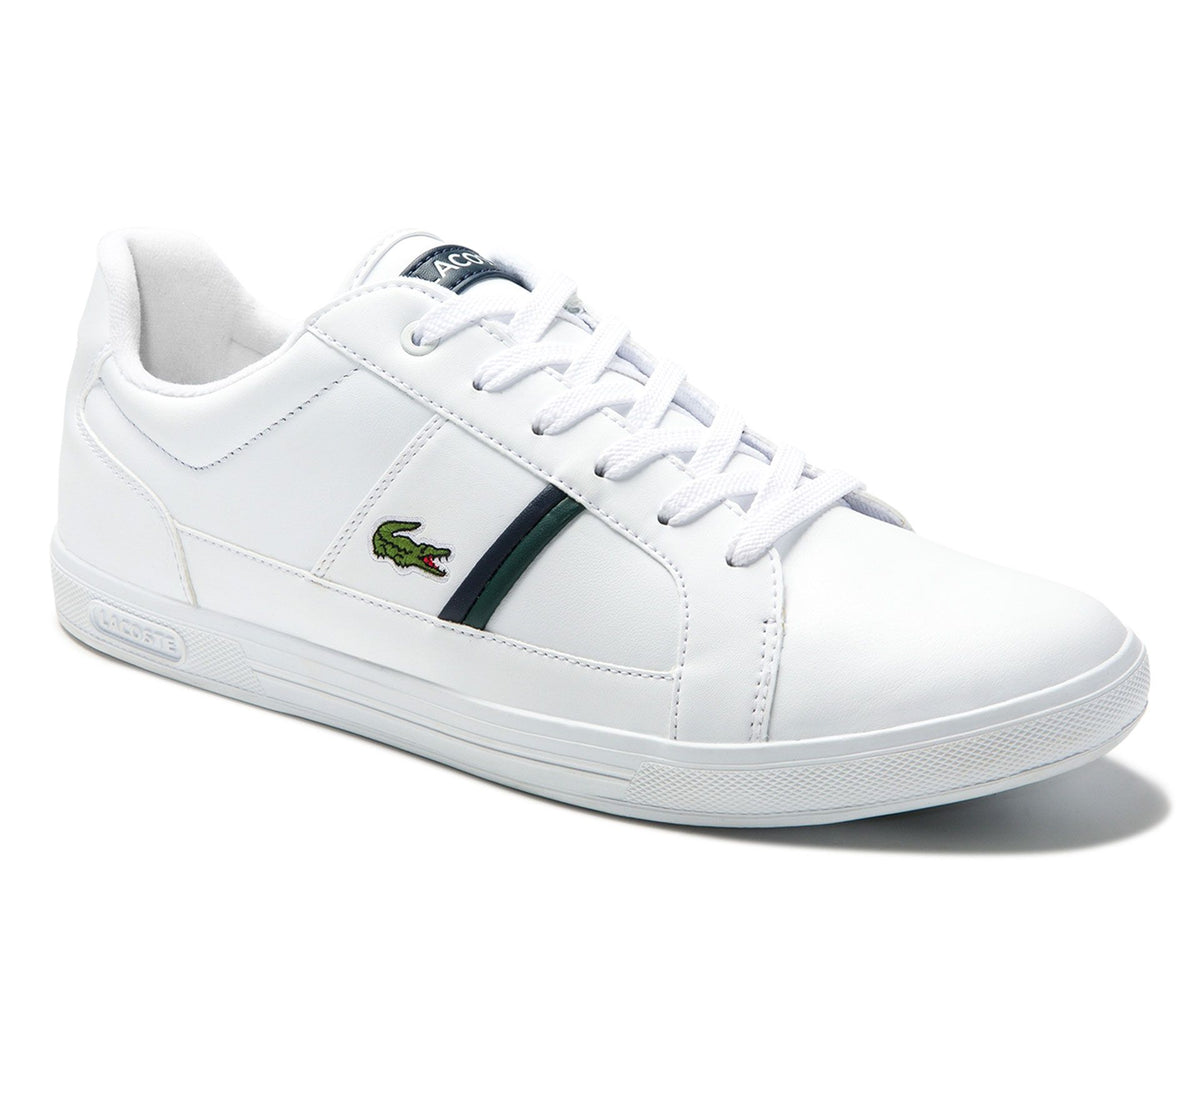 Europa 0120 1 SMA Sneakers White